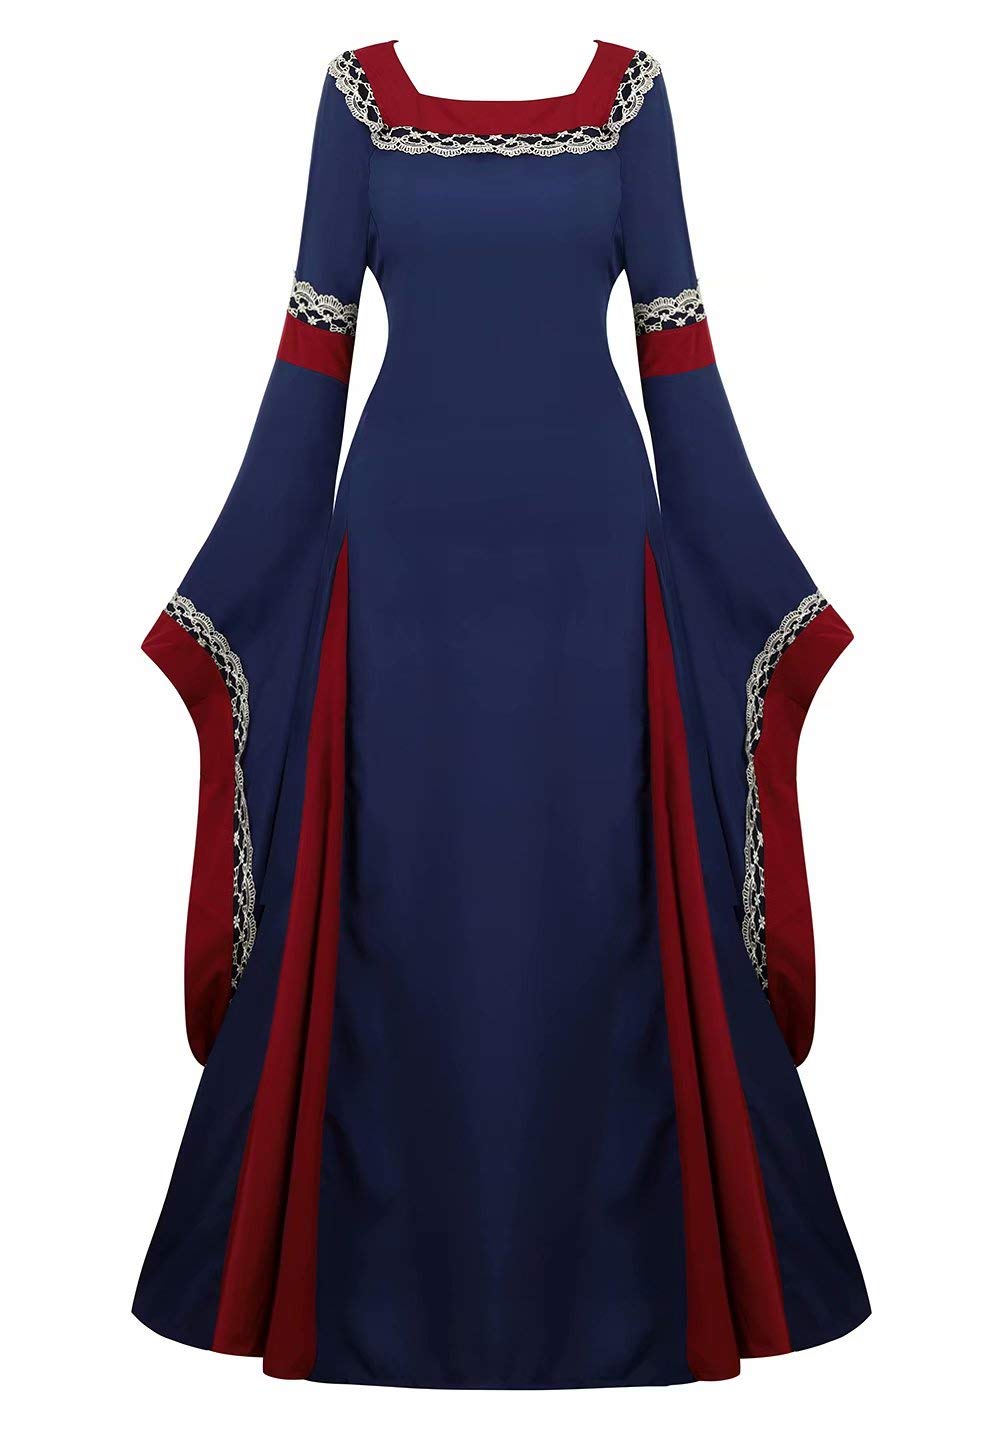 Josamogre Mittelalter Kleidung Damen Kleid mit Trompetenärmel Party Kostüm bodenlang Vintage Retro Renaissance Costume Cosplay Dunkel blau L